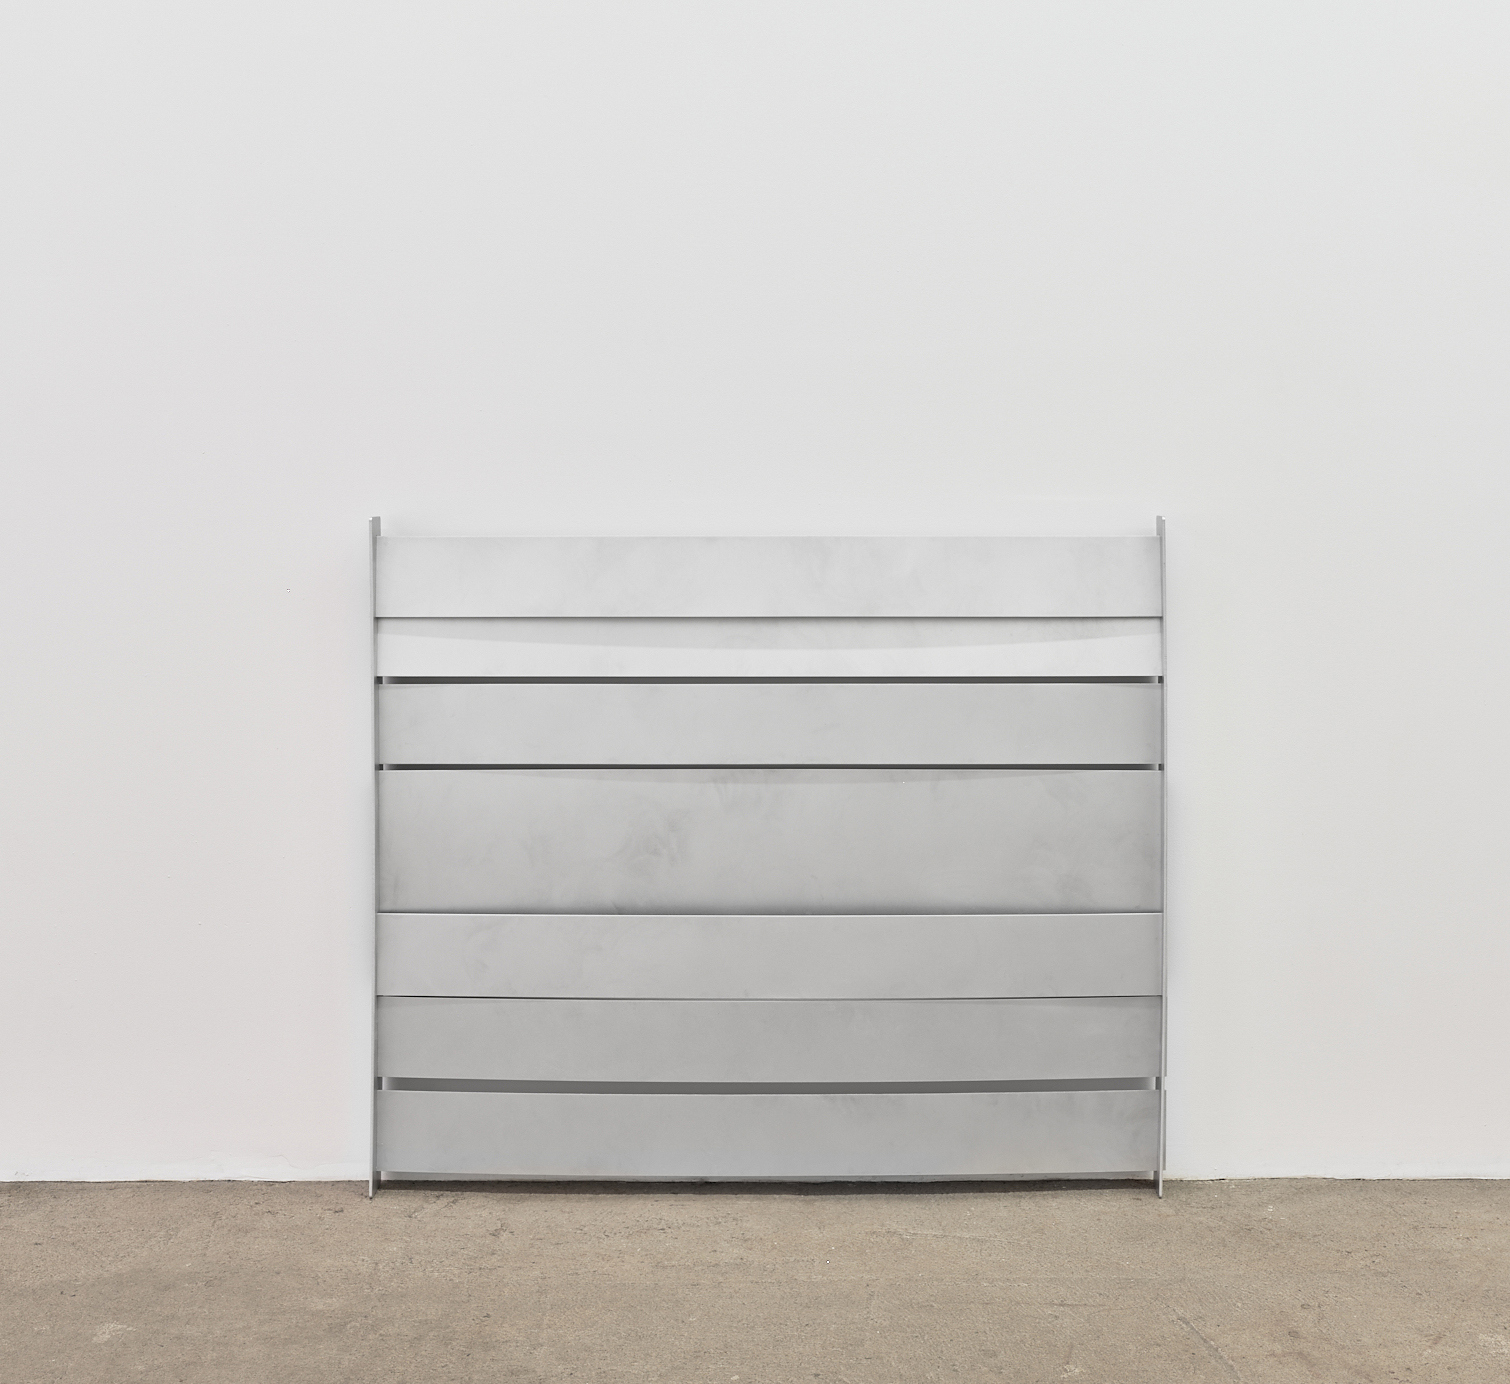 Elizabeth Orr "Indoor", 2022 aluminum, wood 48 x 41 x 3 inches (122 x 104 x 8 cm) 